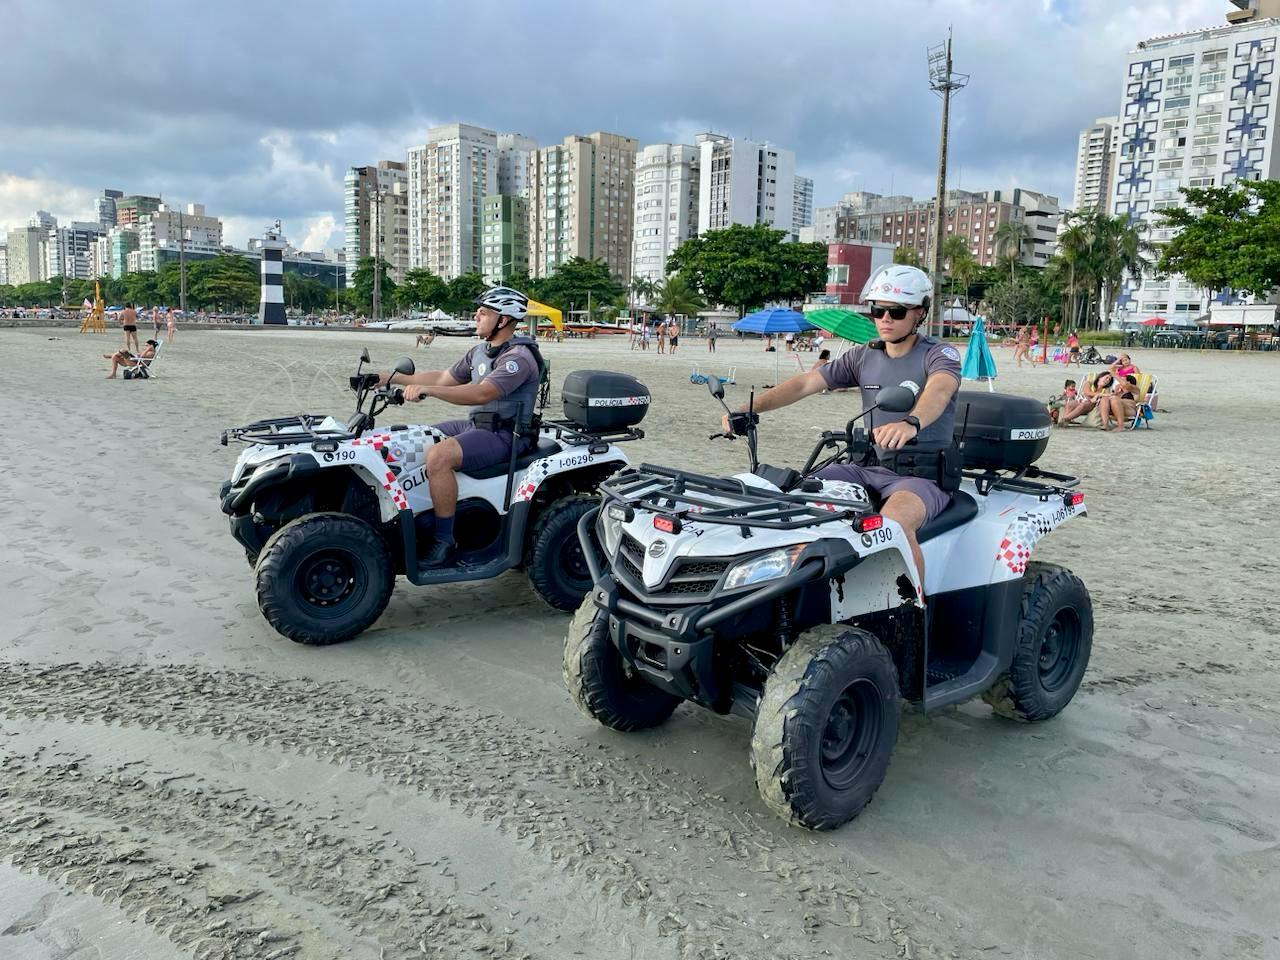 Policiais patrulham em quadriciclo praias do litoral de SP